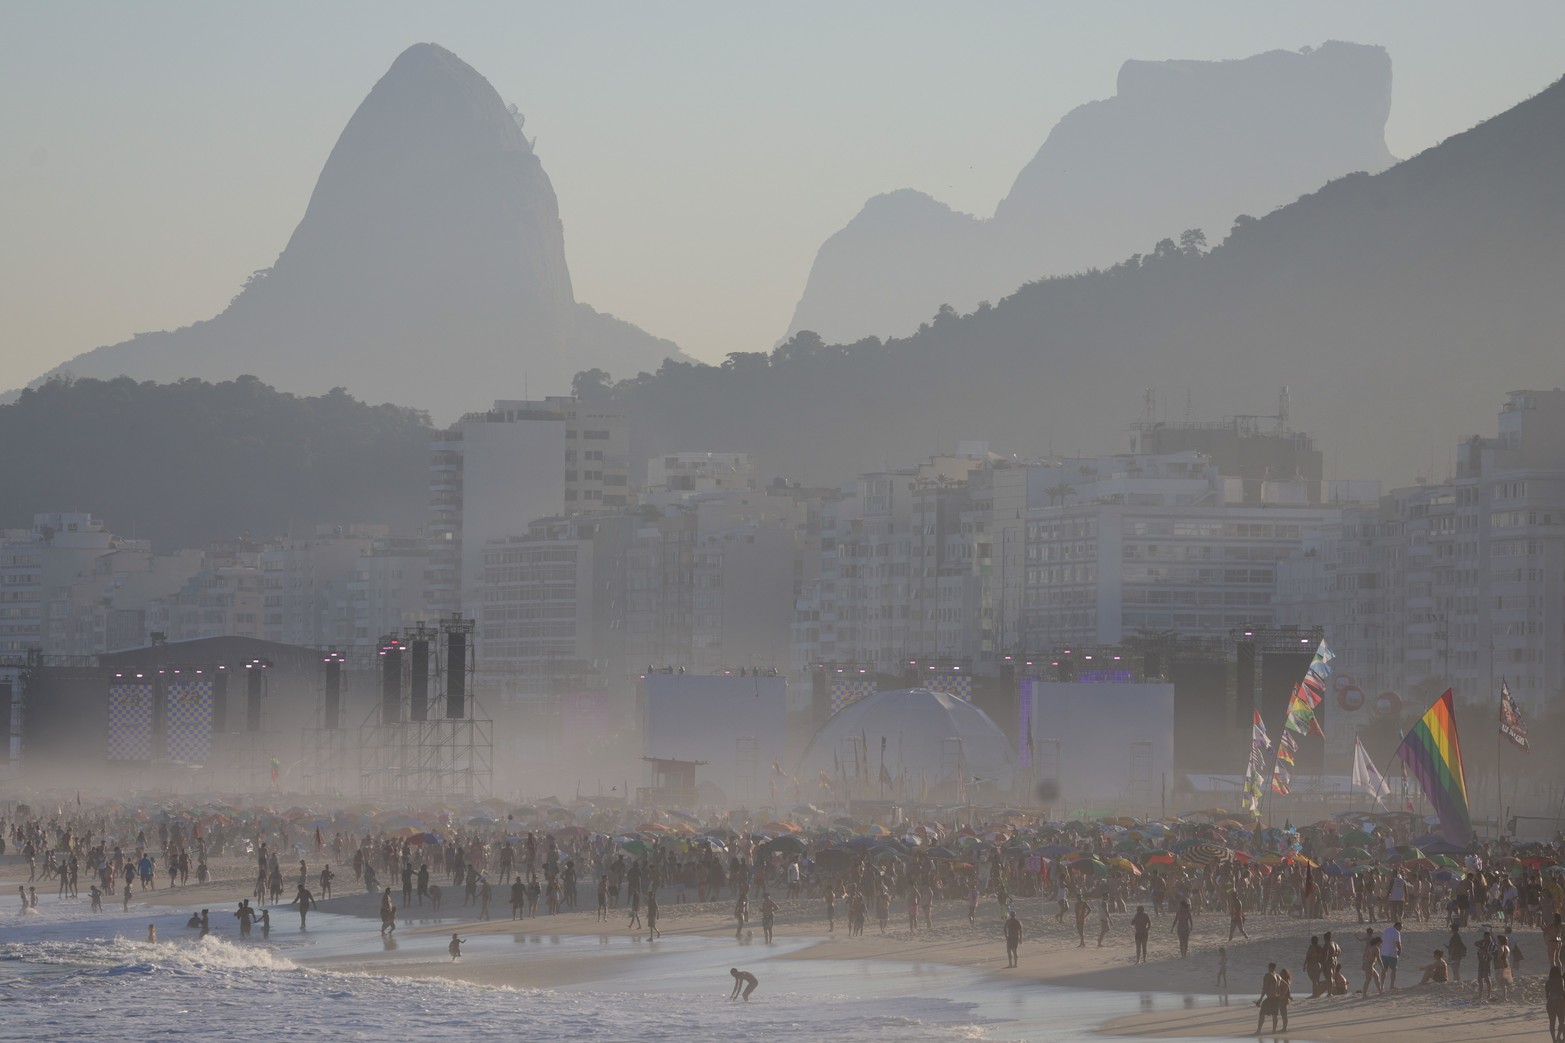 Los fans se reunieron en la playa de Copacabana cerca del escenario donde Madonna realizó un concierto, en Río de Janeiro, Brasil.